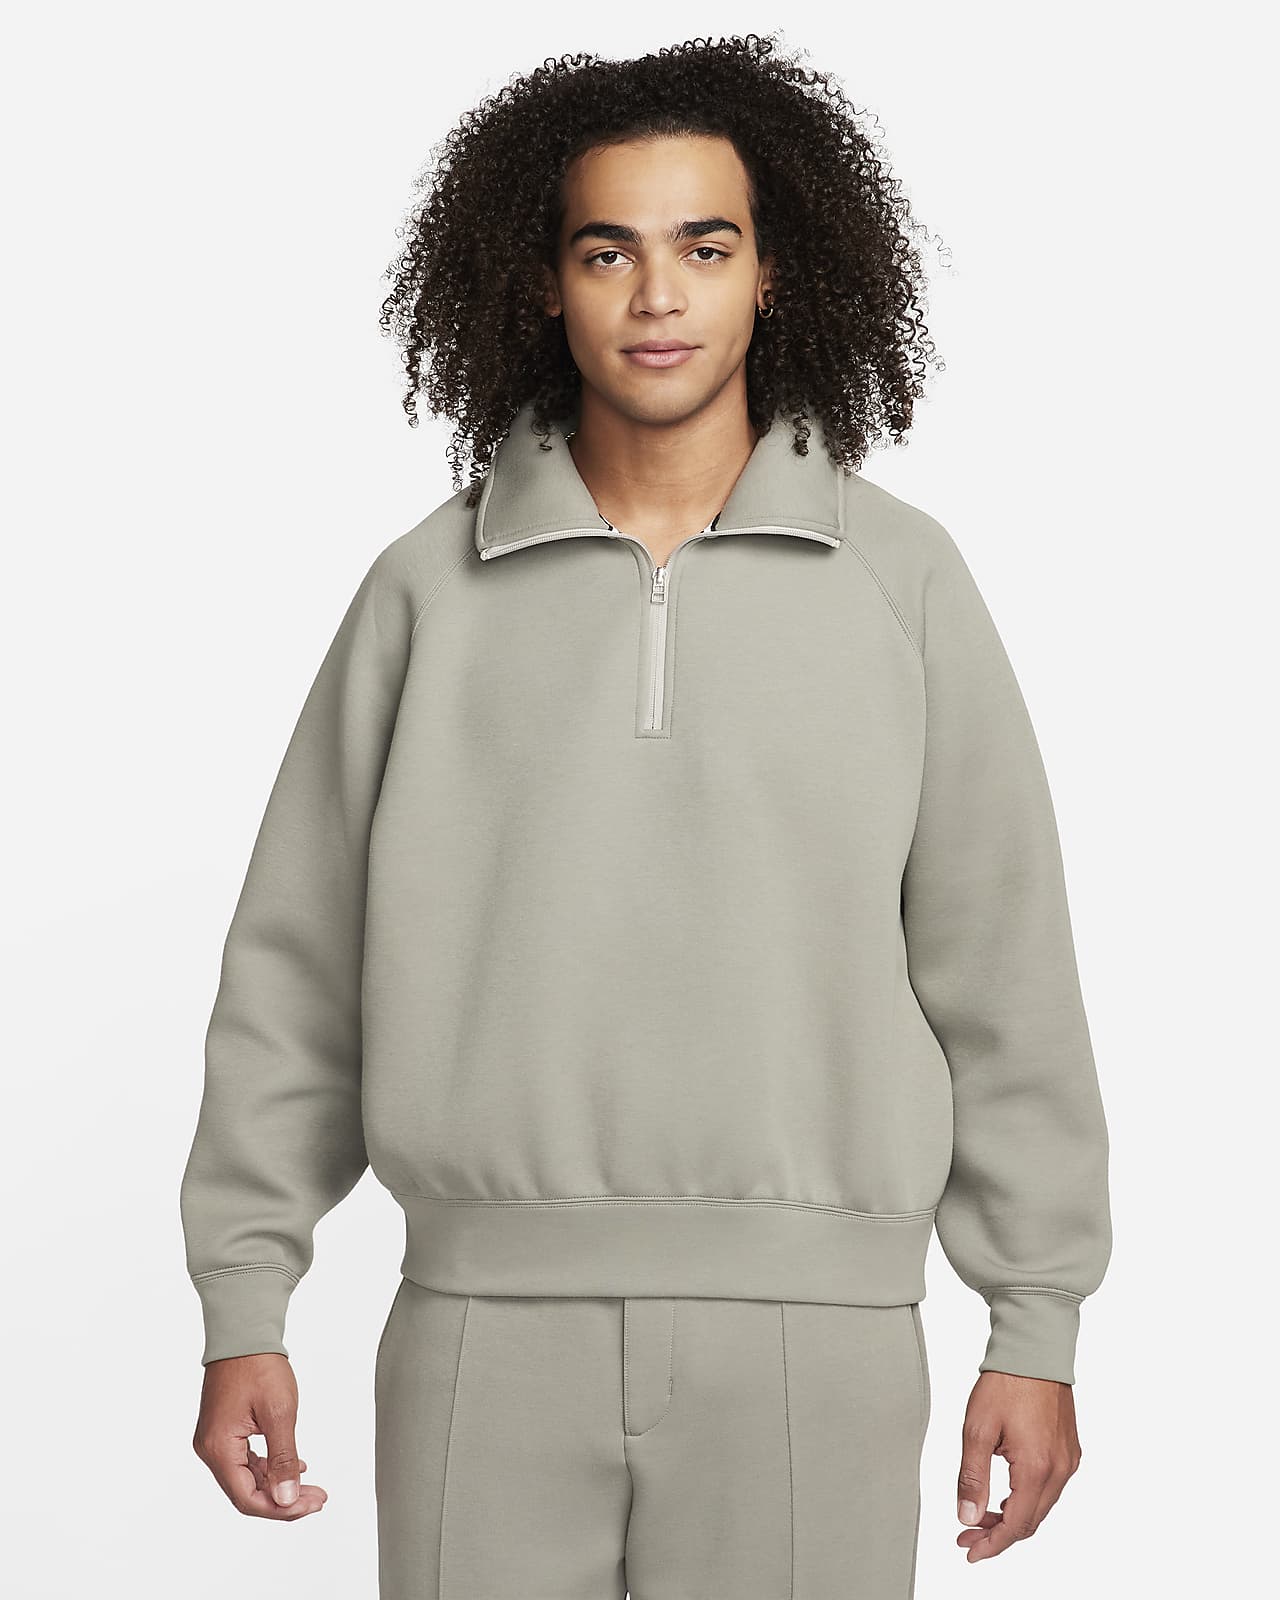 Camisola com fecho até meio Nike Tech Fleece Reimagined para homem